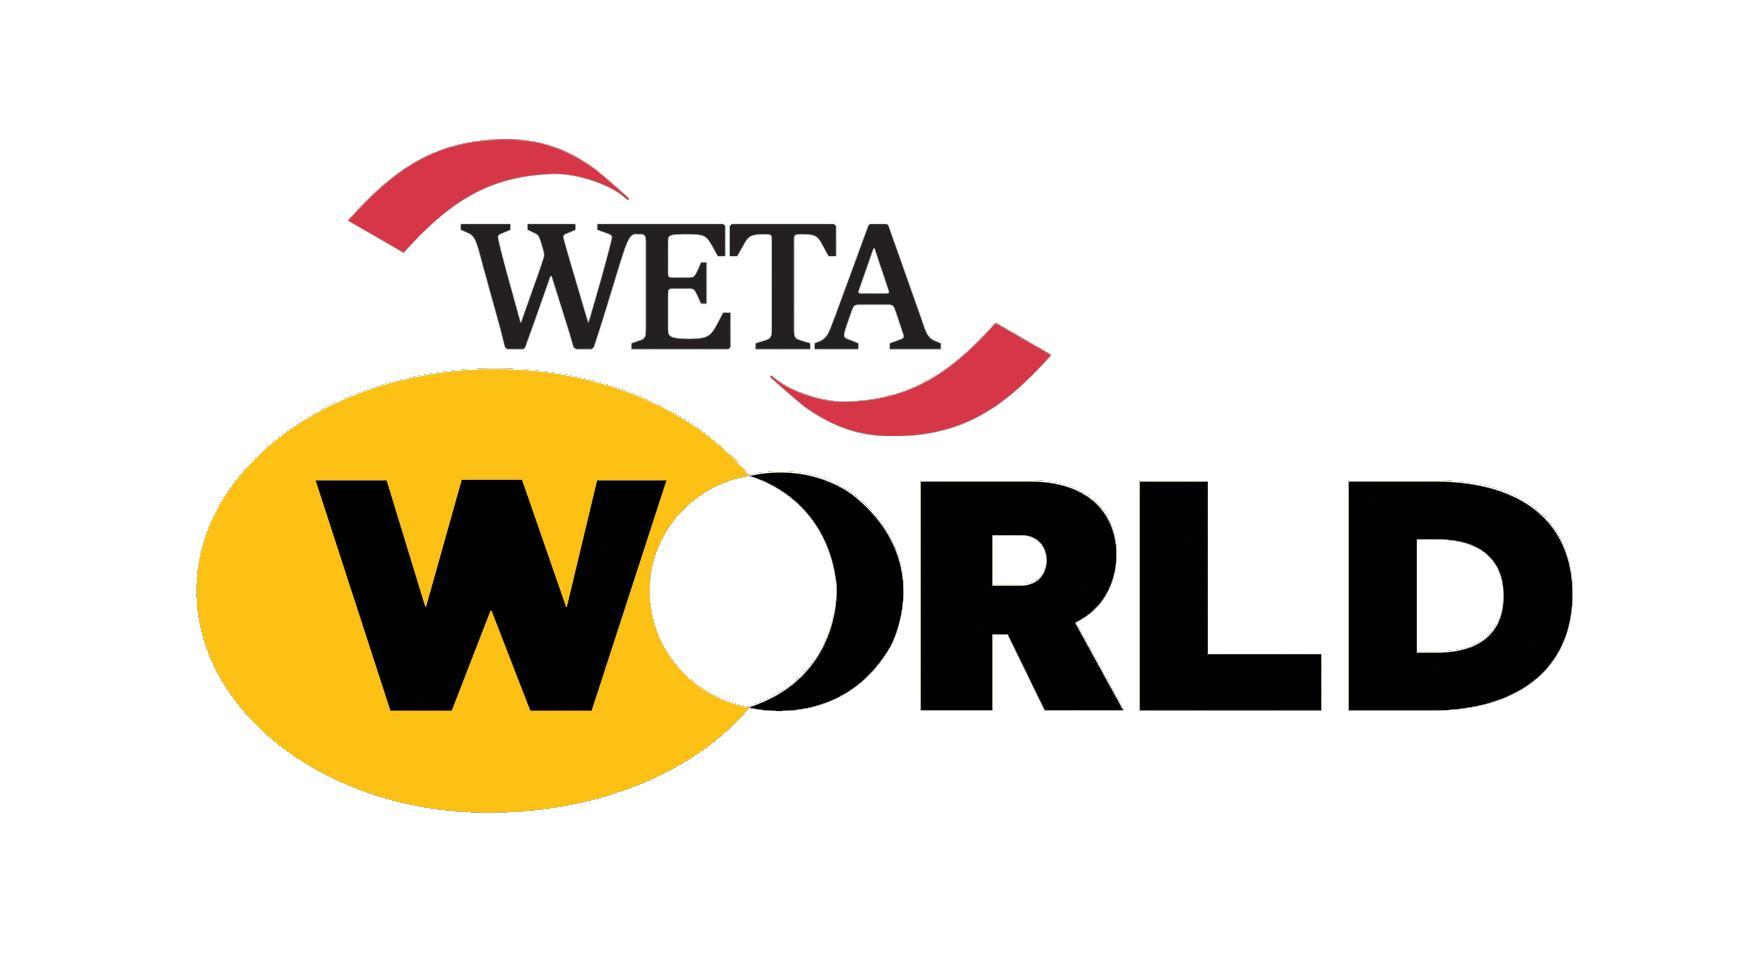 WETA World